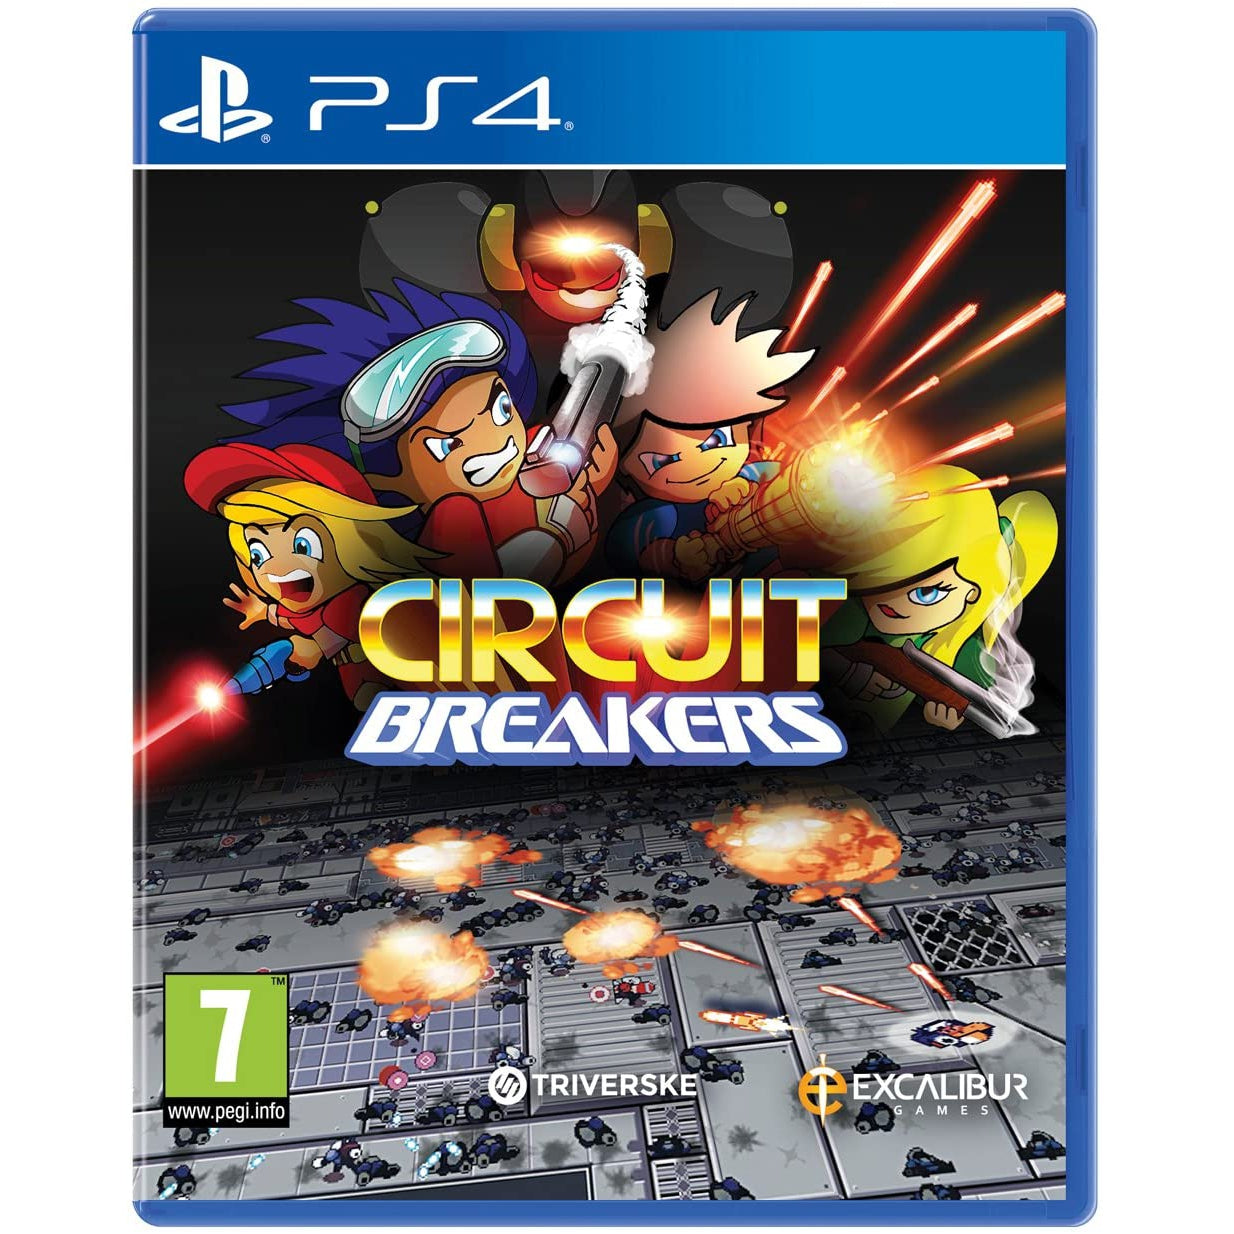 Circuit Breakers (PS4)